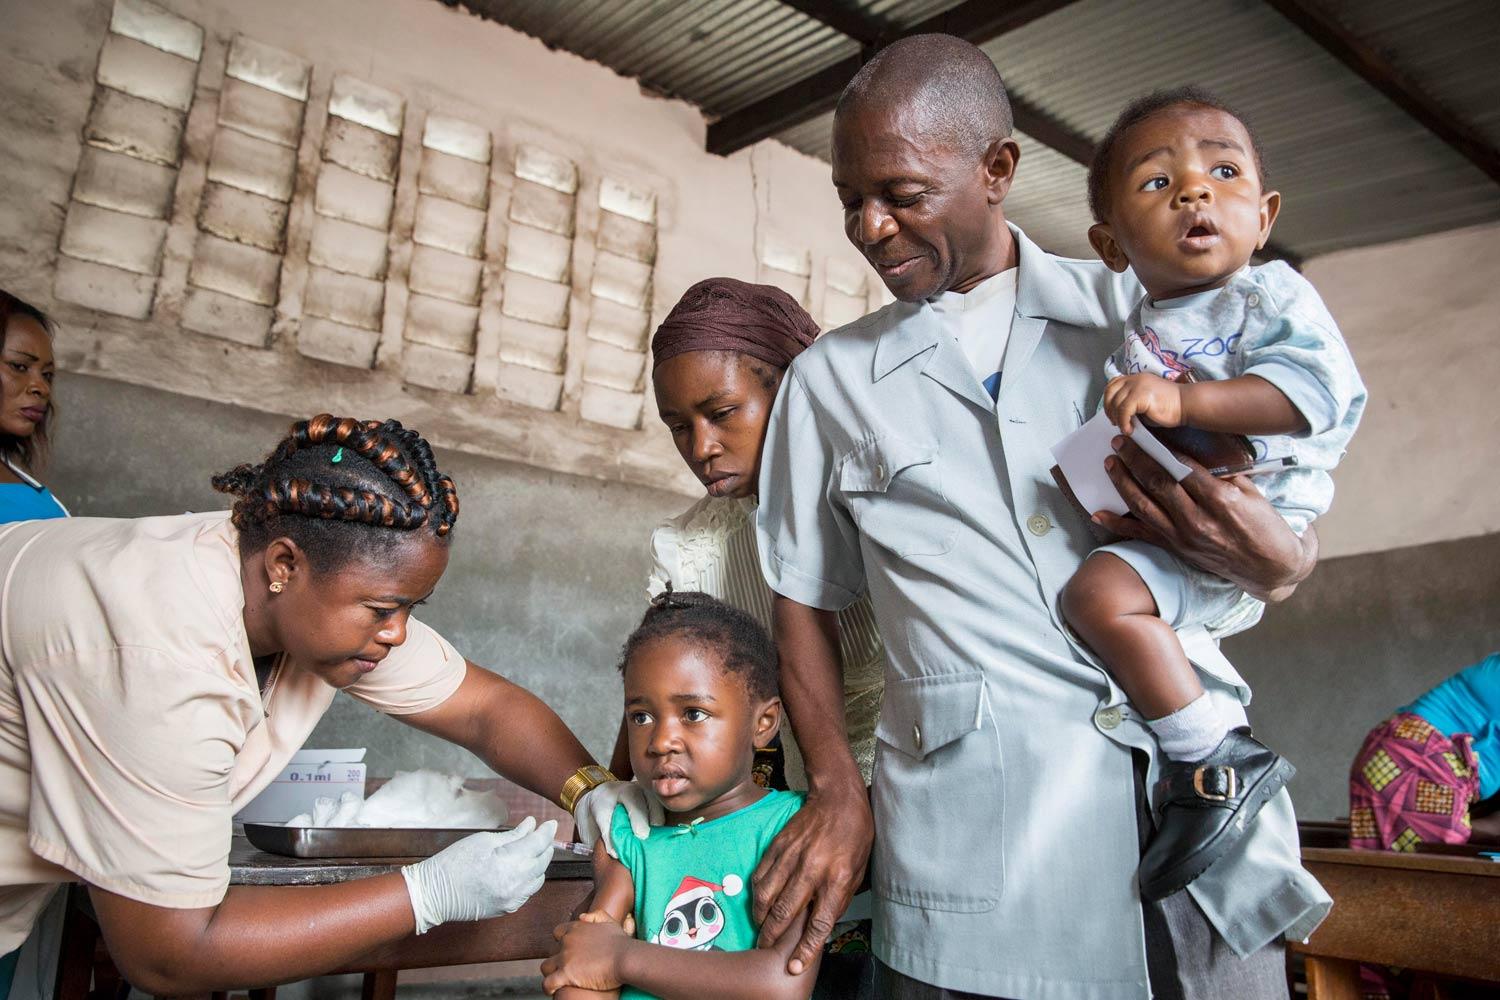 Famille vaccinée lors de la campagne de vaccination contre la fièvre jaune de Médecins sans frontières (MSF) à Kinshasa, RDC, 2016